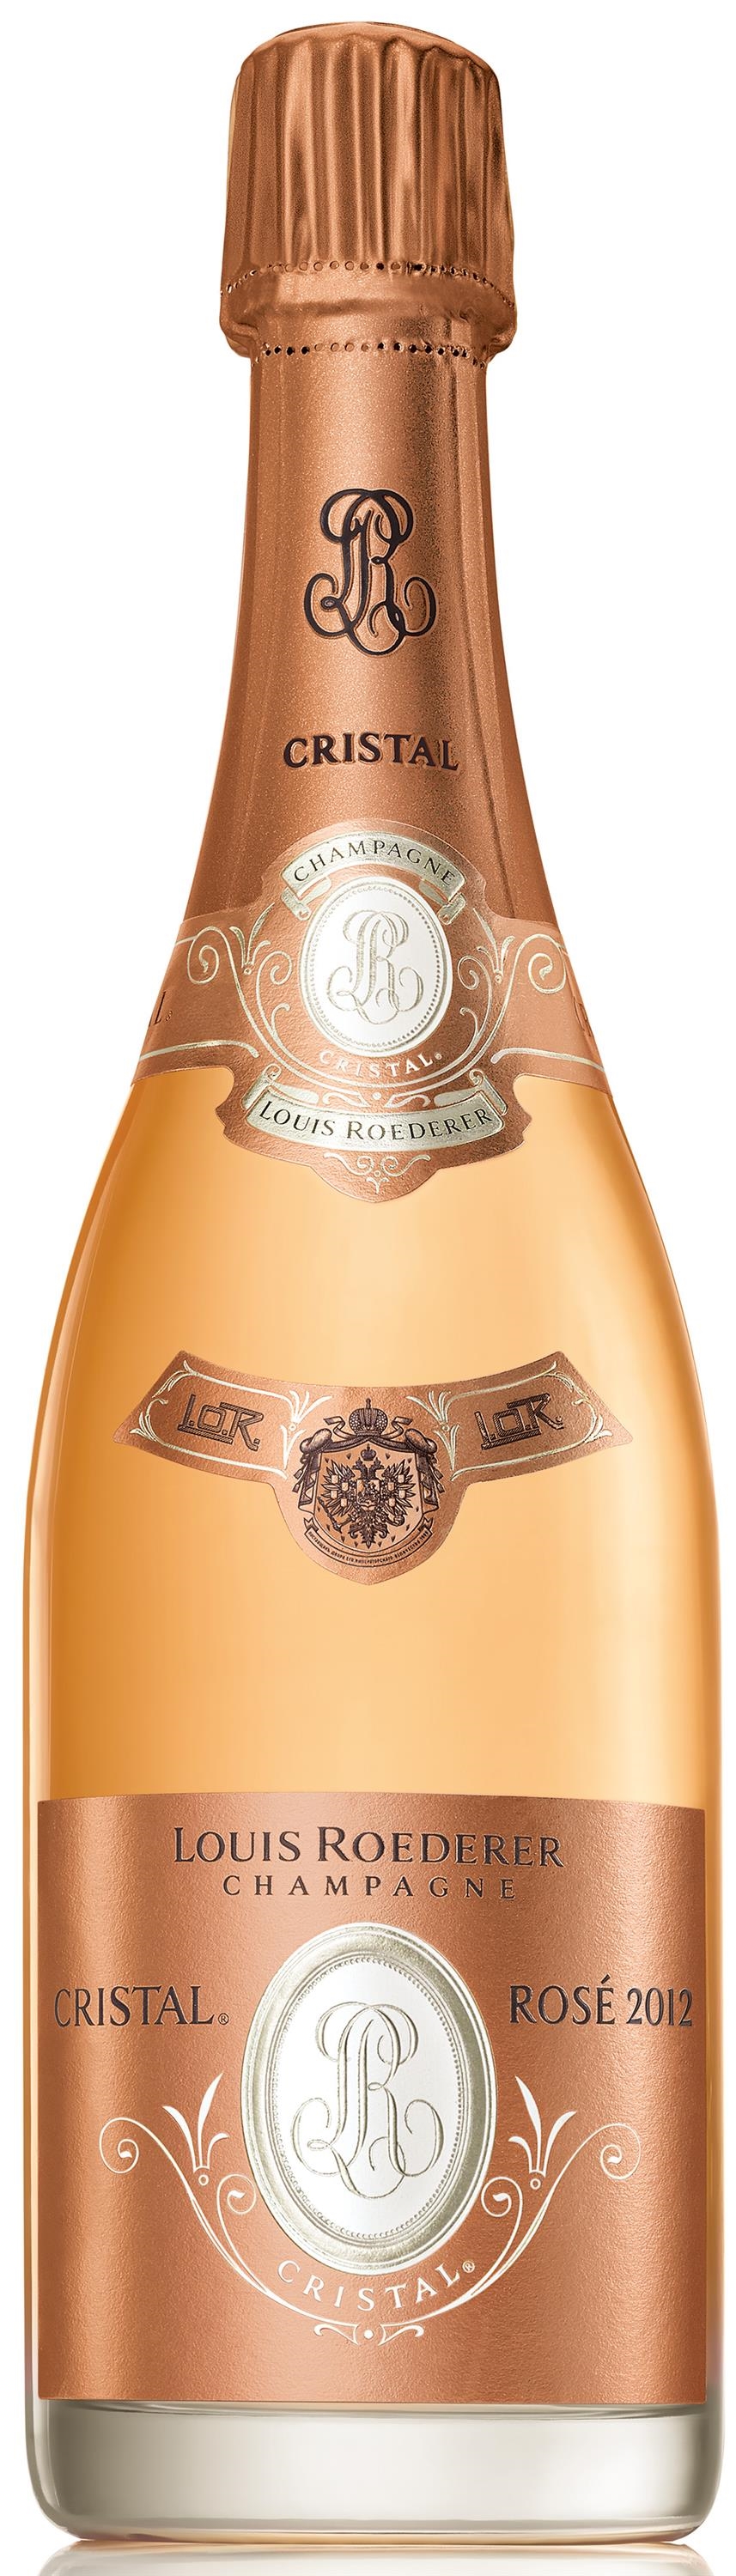 Champagne Louis Roederer Cristal Rosé 2012